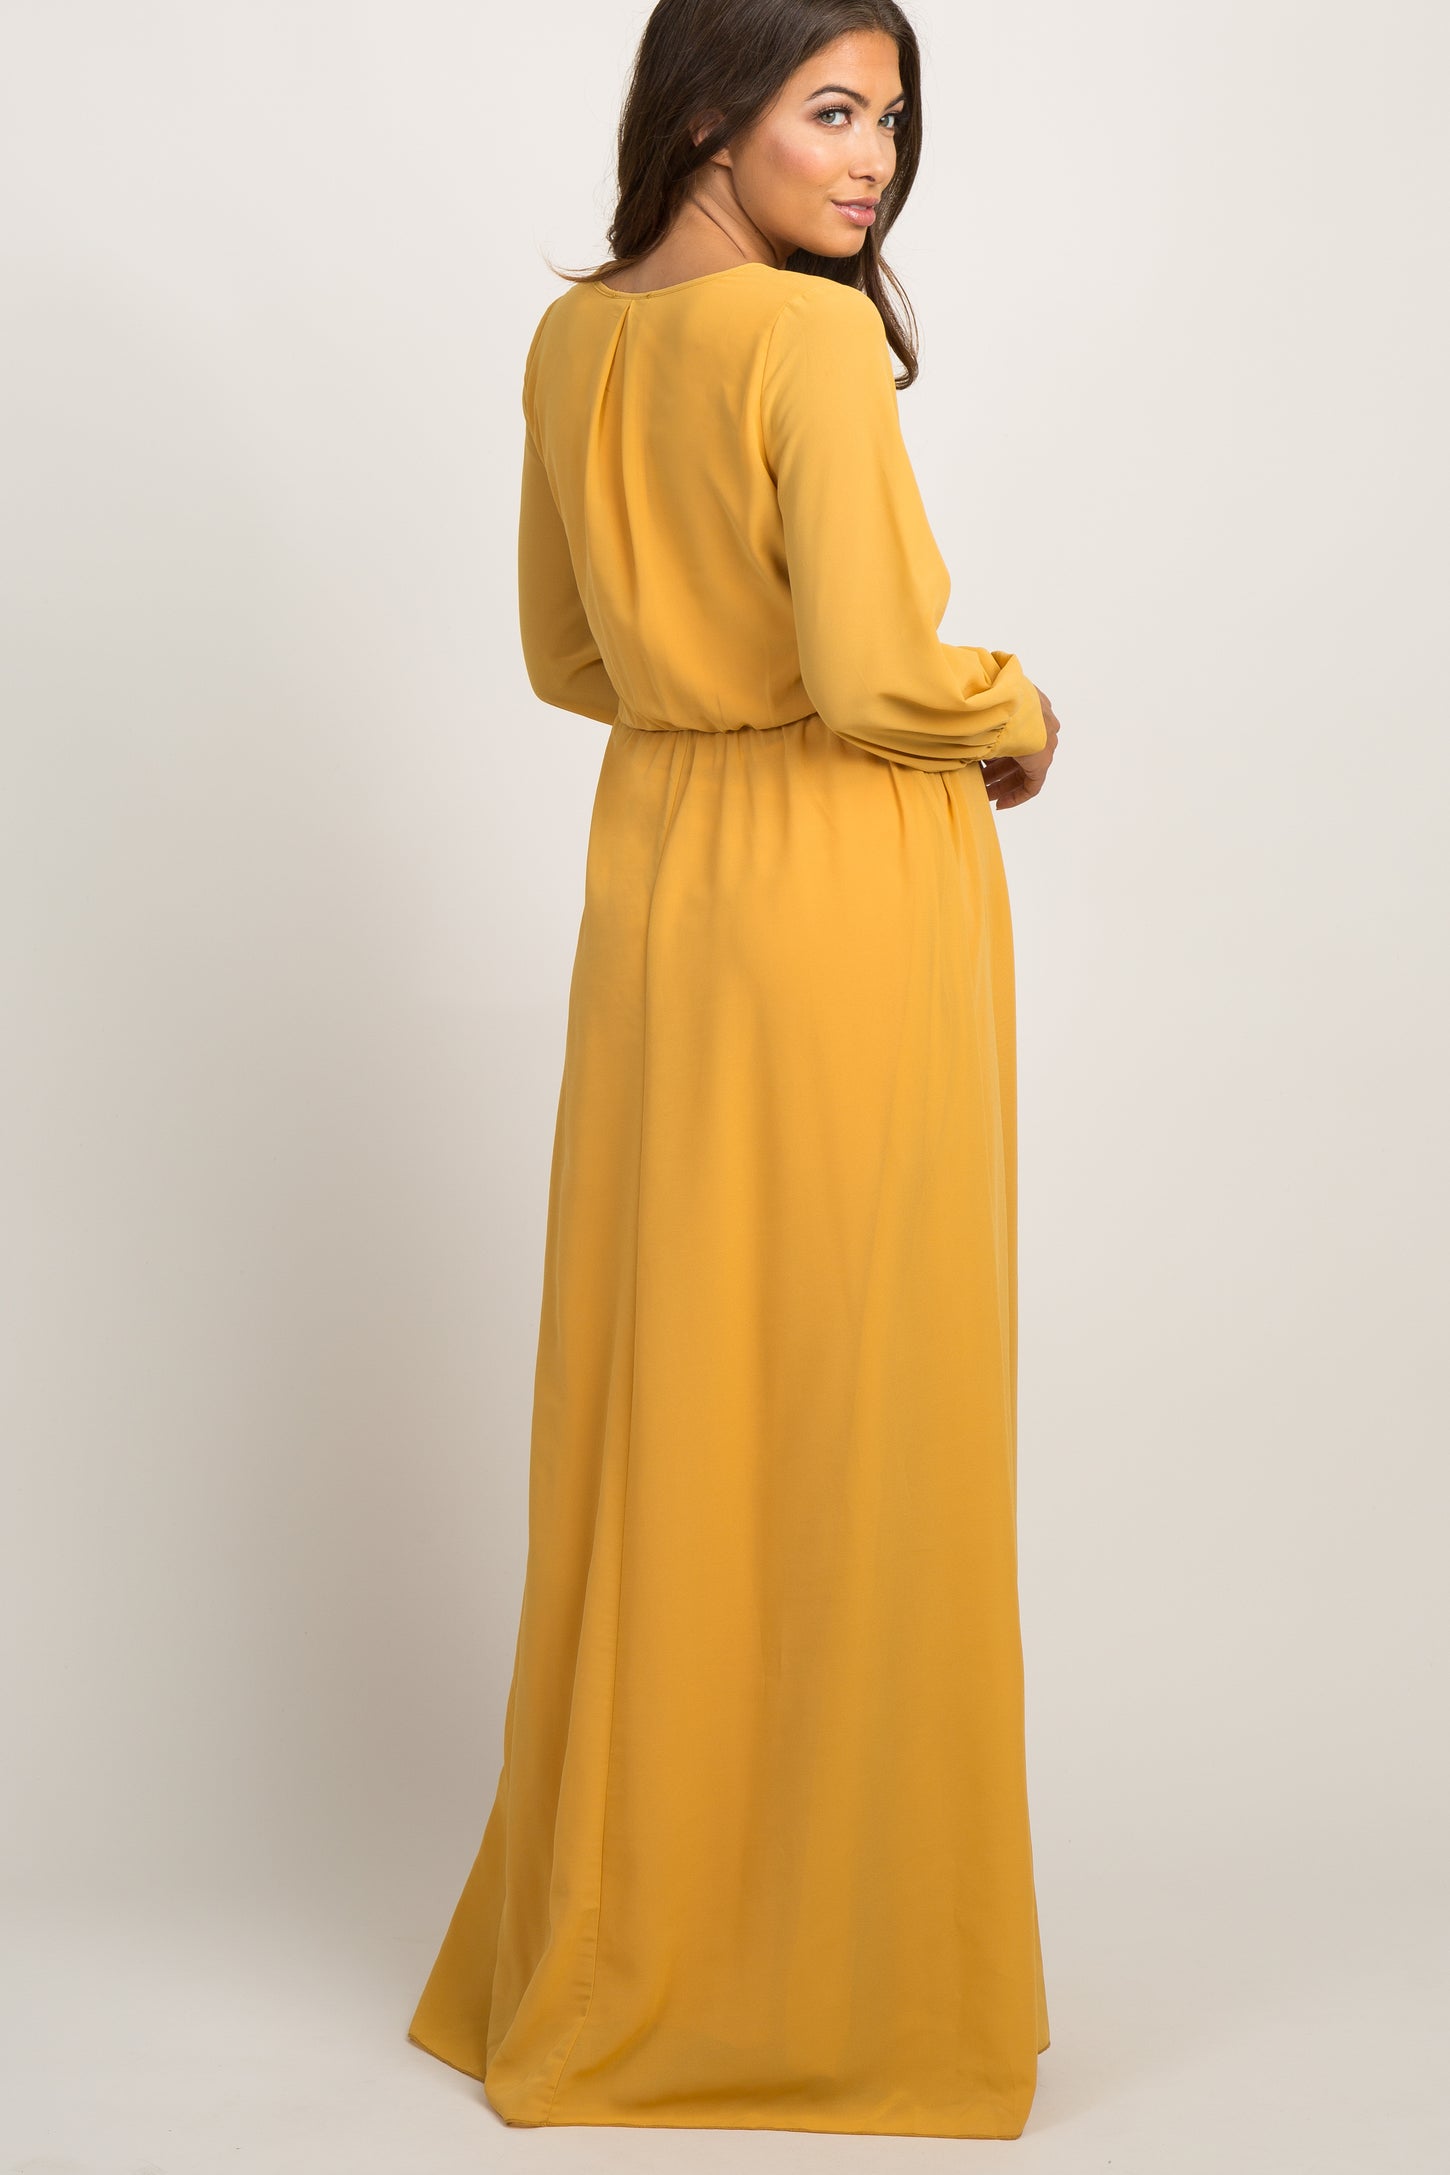 Yellow Chiffon Long Sleeve Pleated Maternity Maxi Dress